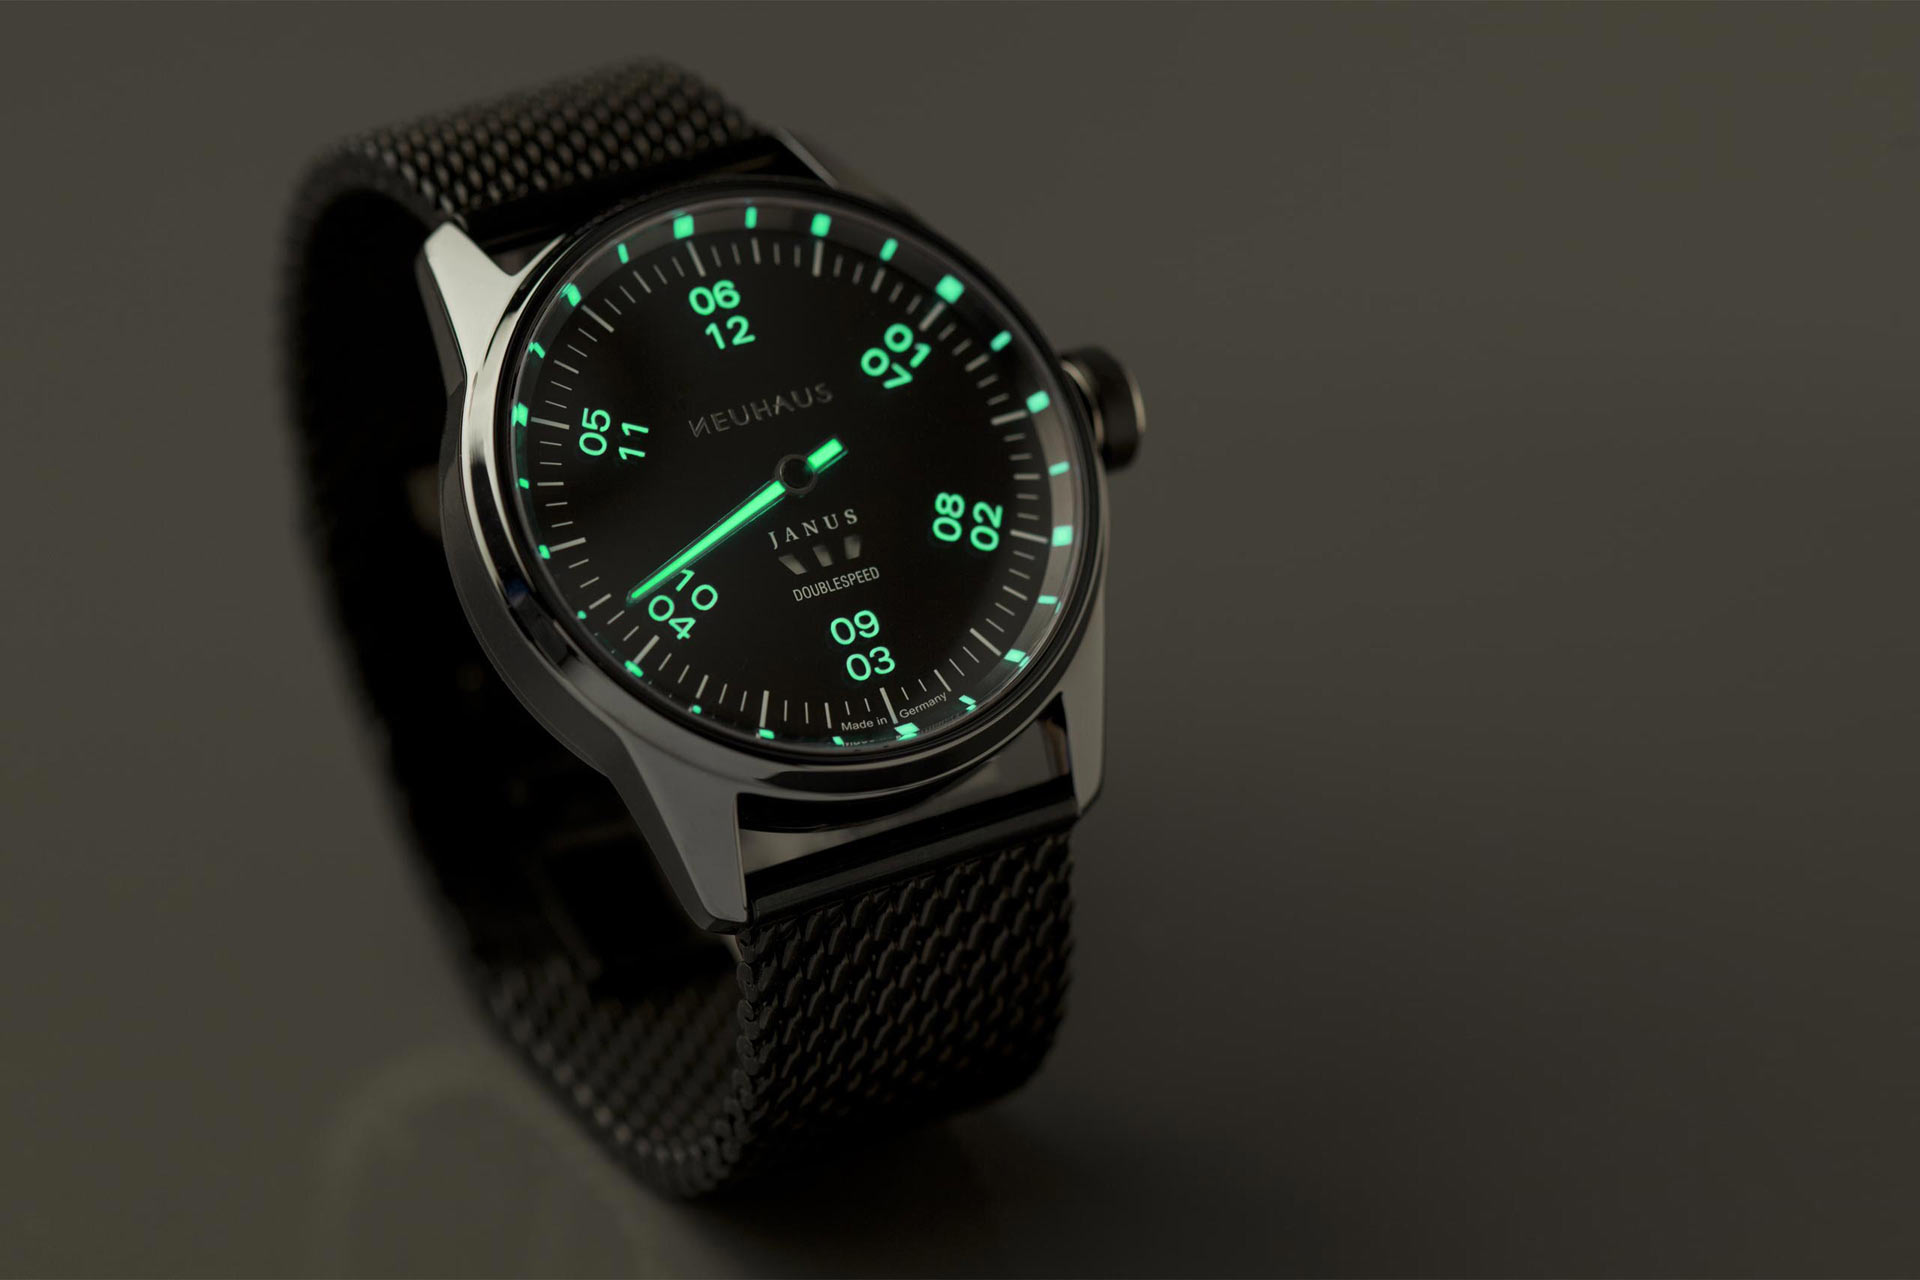 Einzeigeruhren von NEUHAUS Timepieces, Modell JANUS DoubleSpeed-Sport